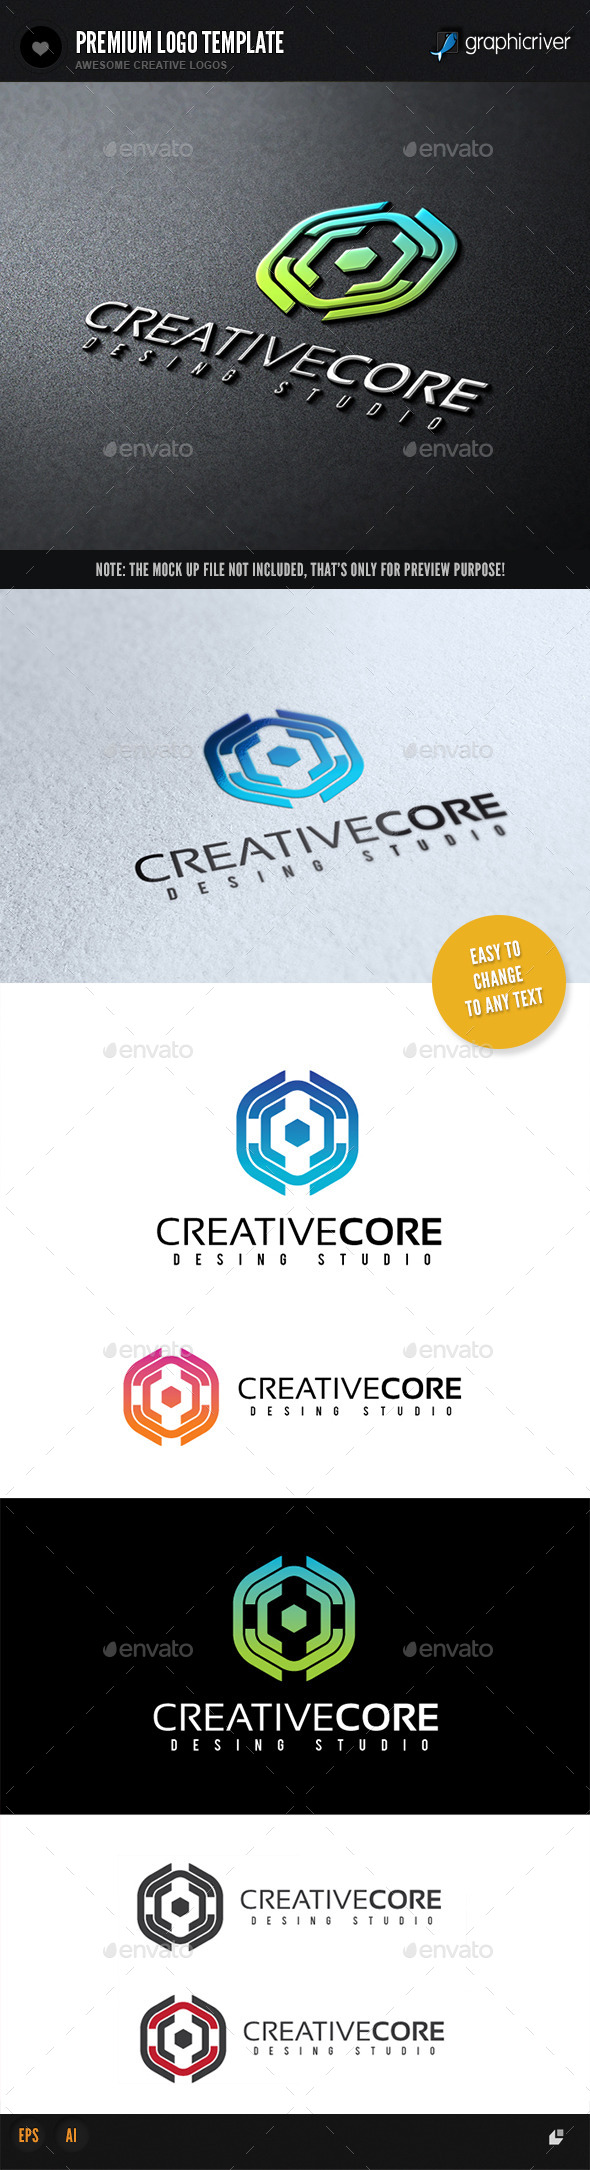 Creative Core